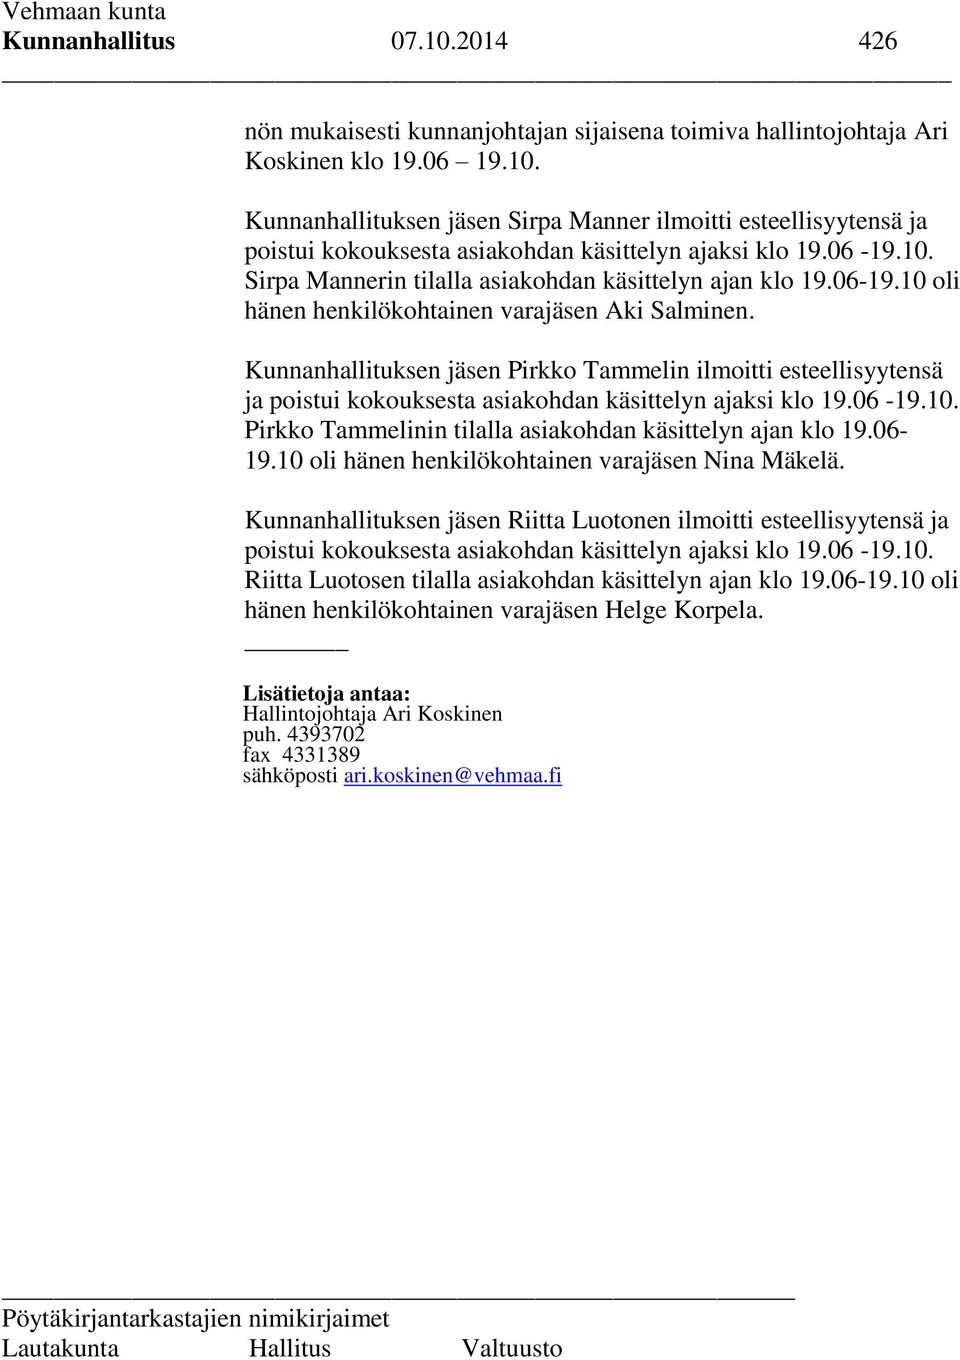 Kunnanhallituksen jäsen Pirkko Tammelin ilmoitti esteellisyytensä ja poistui kokouksesta asiakohdan käsittelyn ajaksi klo 19.06-19.10. Pirkko Tammelinin tilalla asiakohdan käsittelyn ajan klo 19.